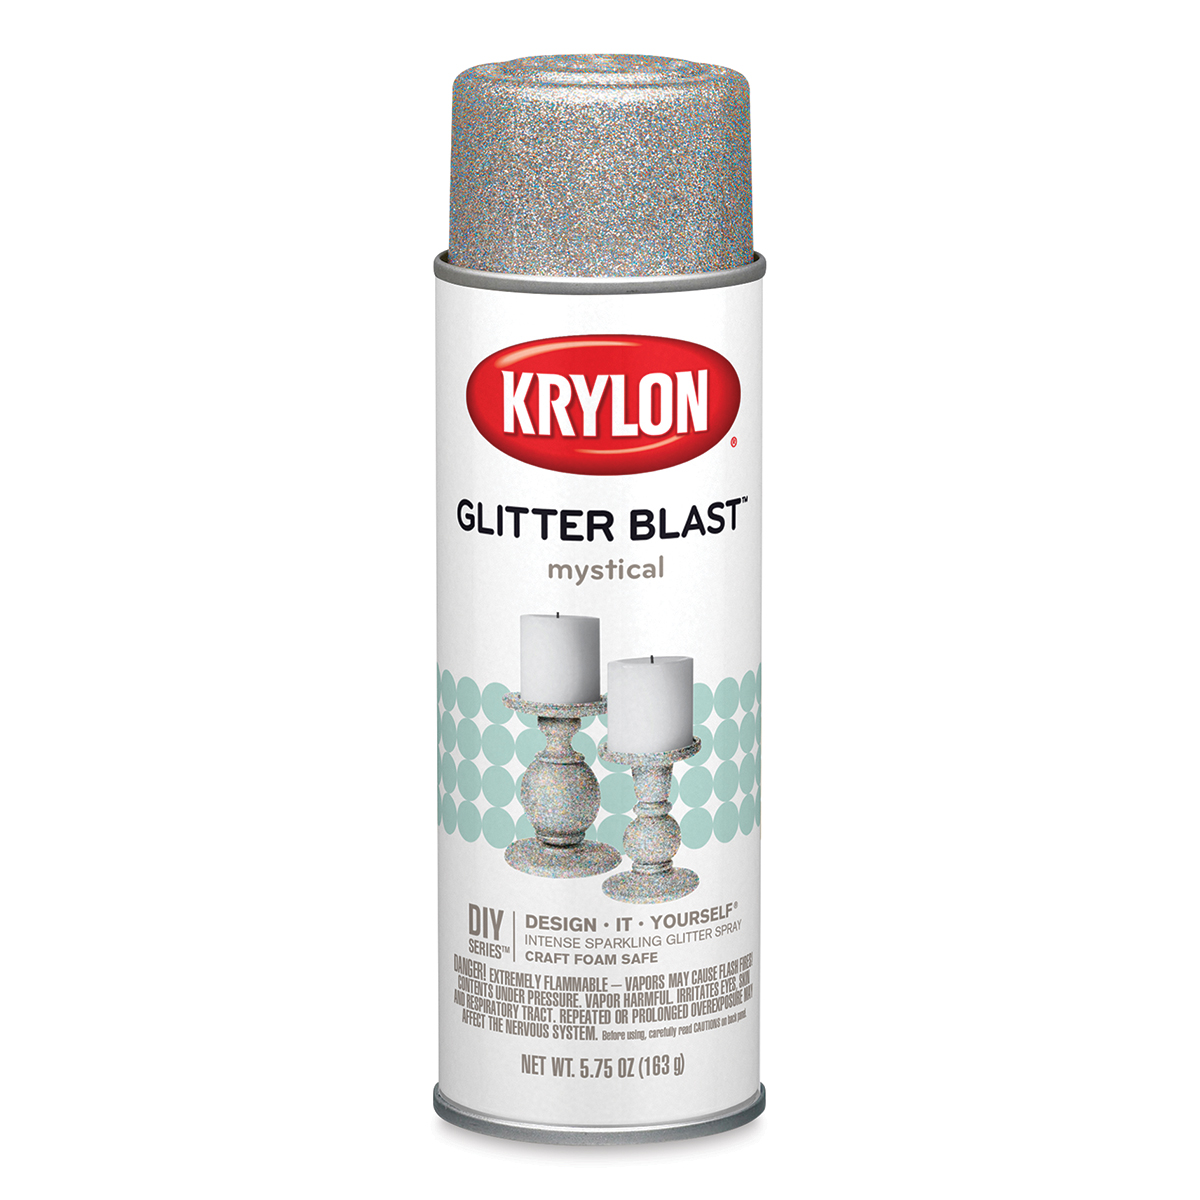  Krylon K03801A00 Glitter Blast Glitter Spray Paint for